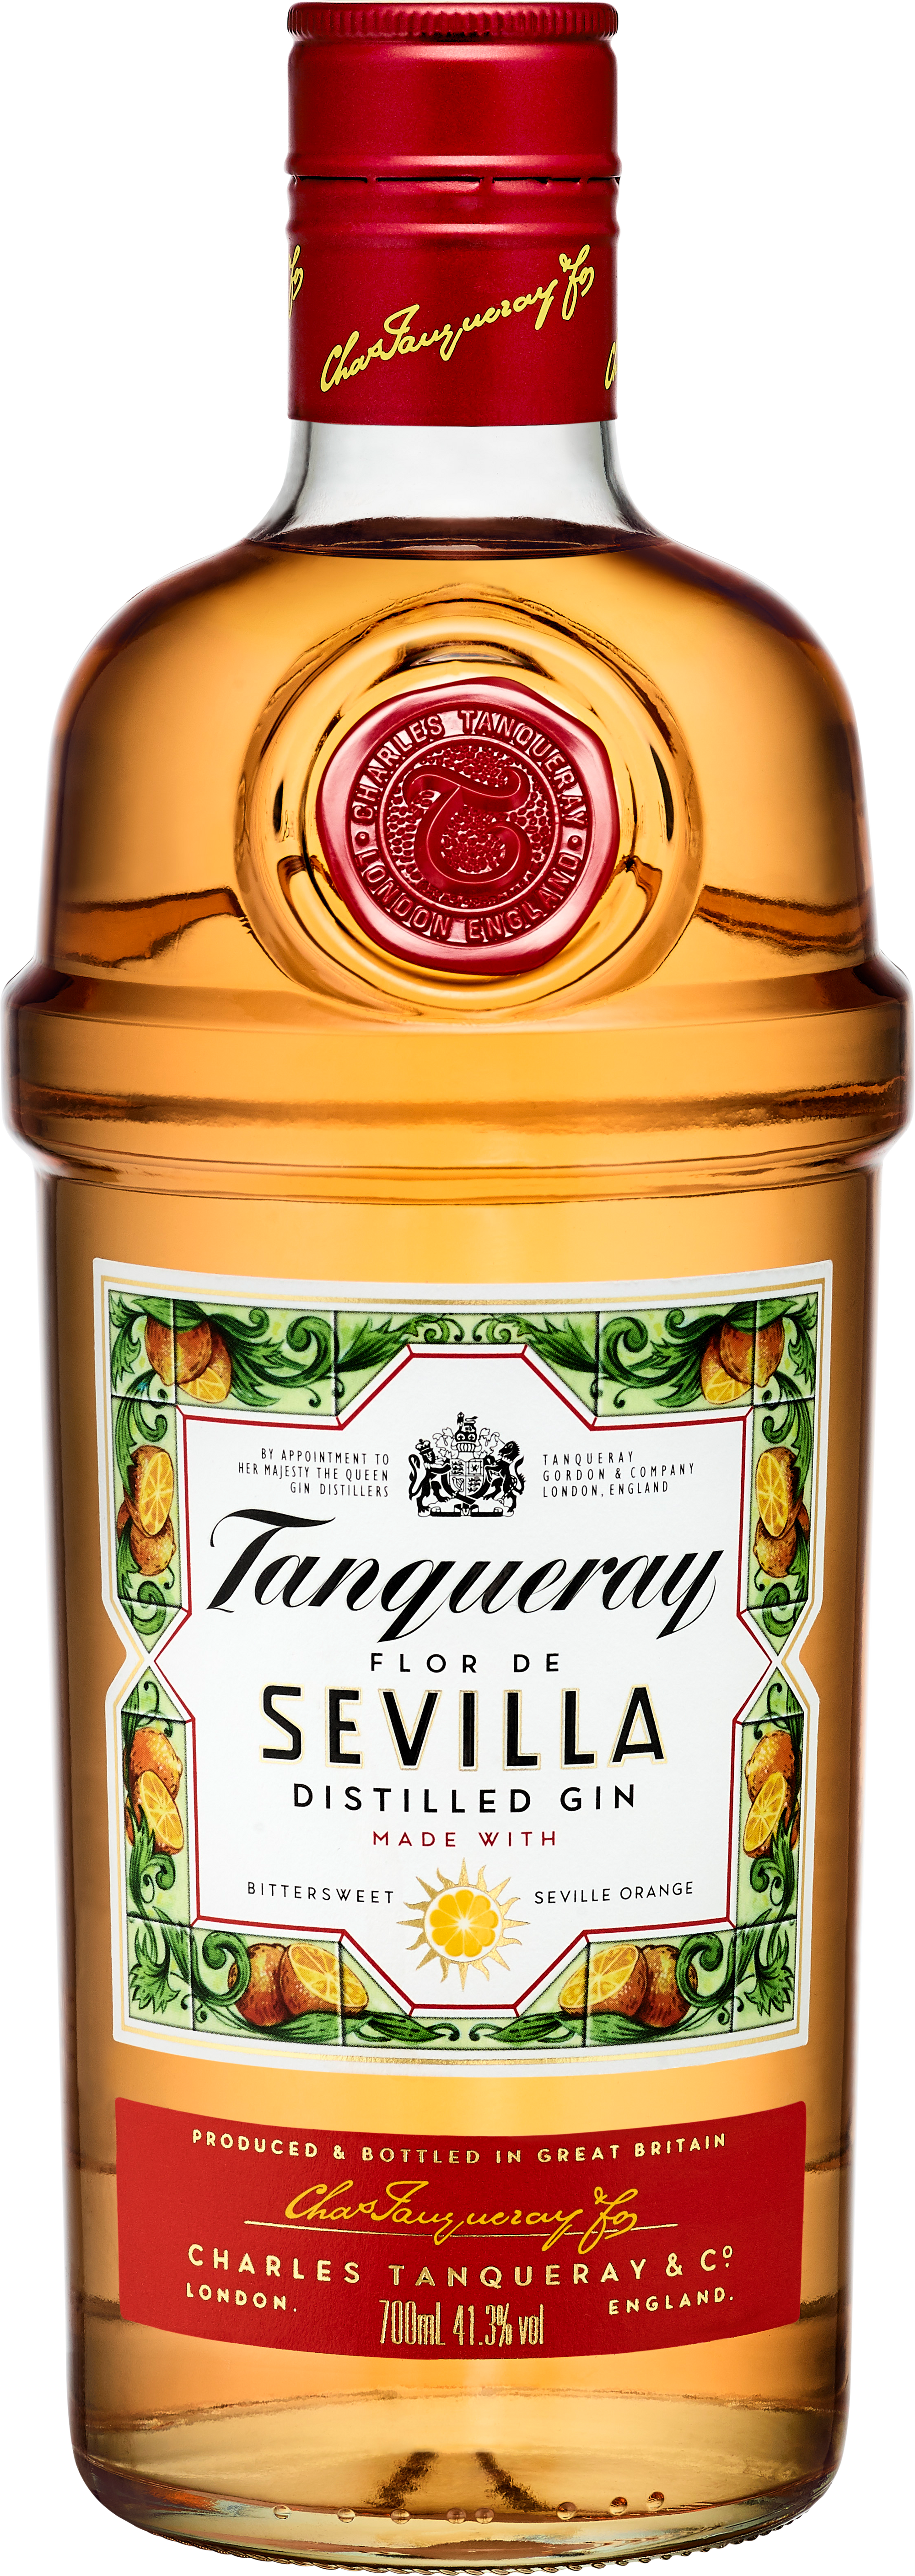 Tanqueray Flor De Sevilla Gin 70cl